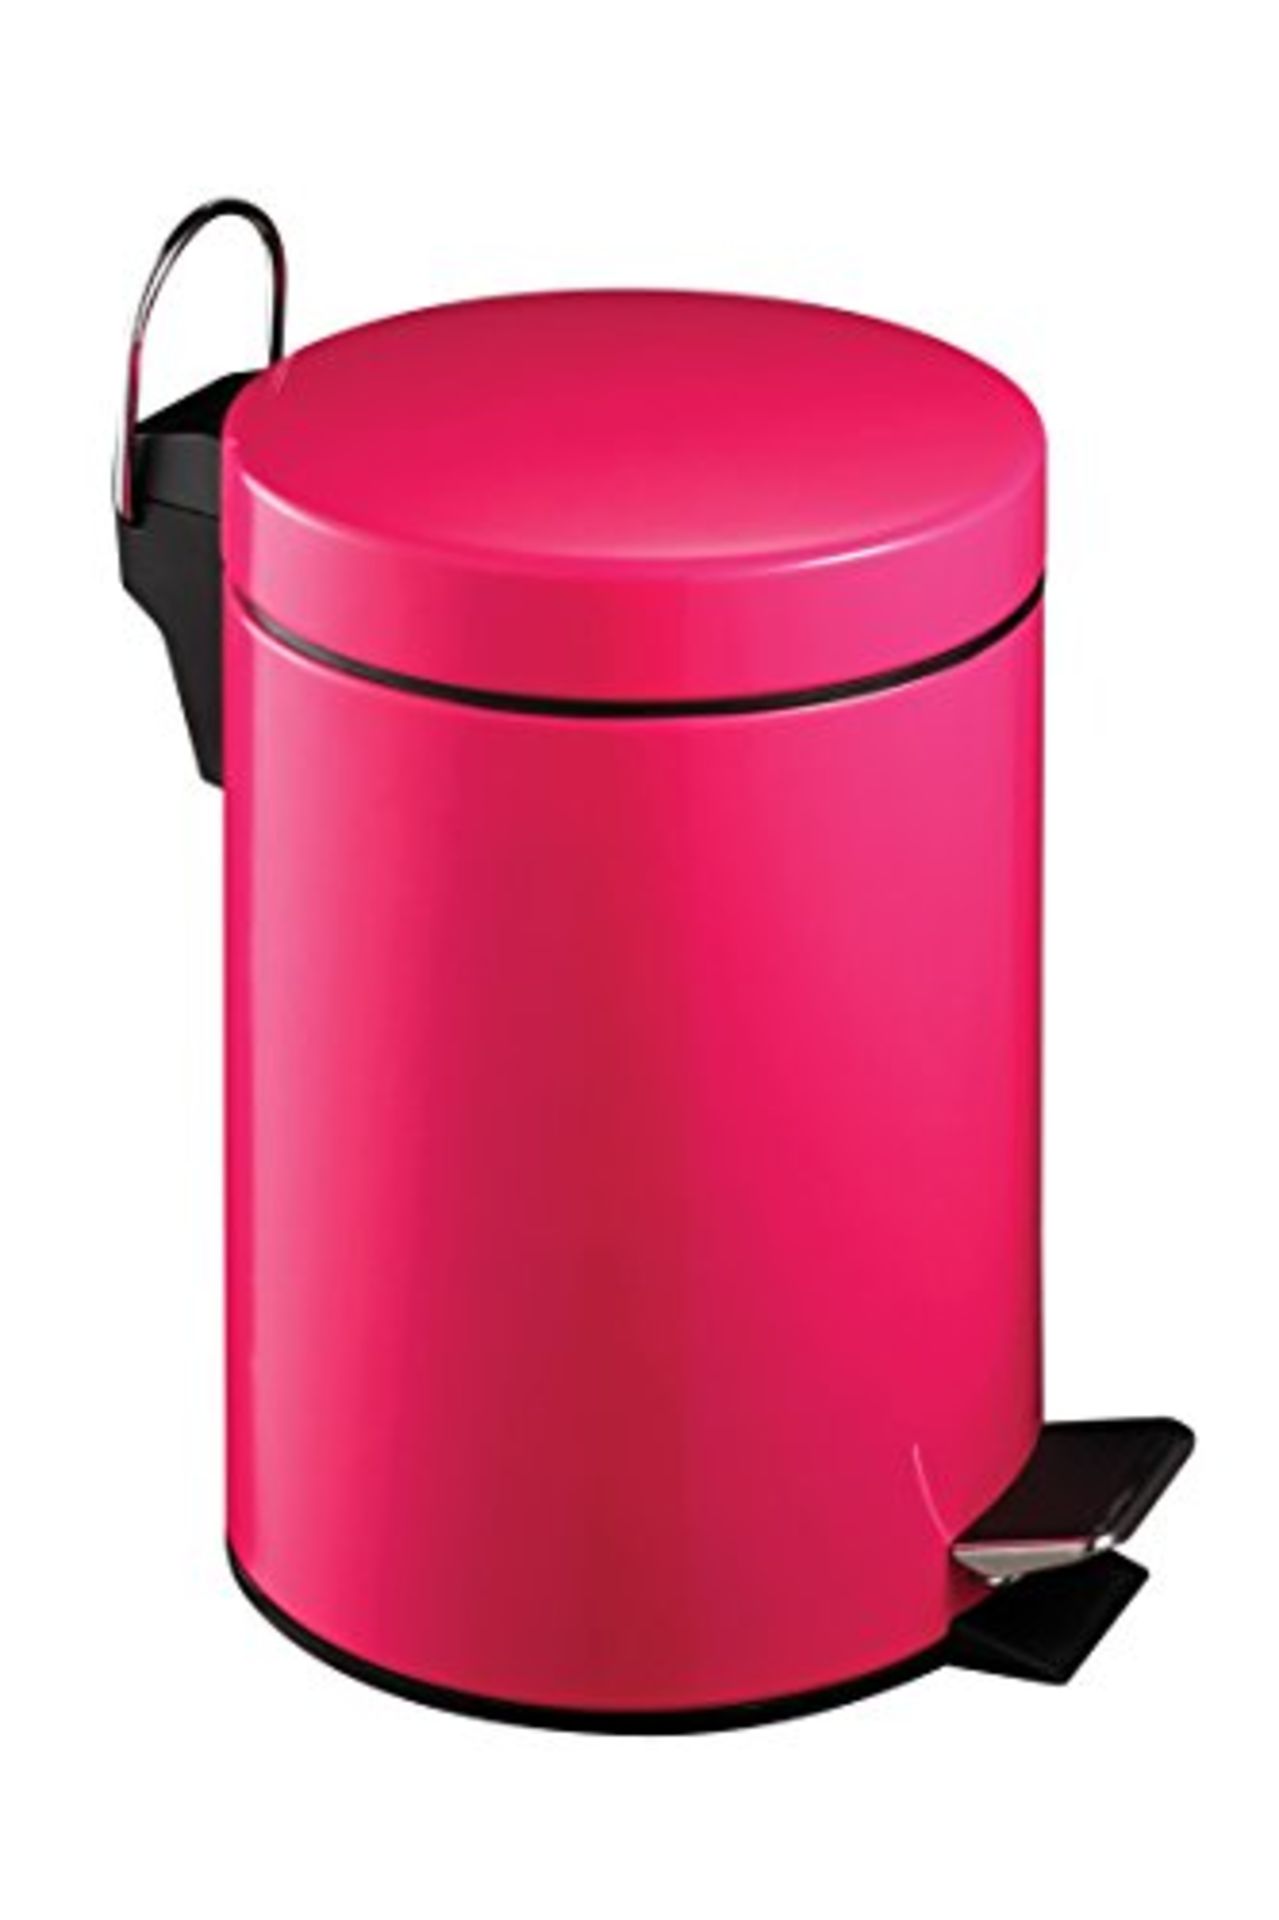 Premier Housewares 506420 Pedal Bin Hot Pink Kitchen Bin Stainless Steel Bathroom Bin